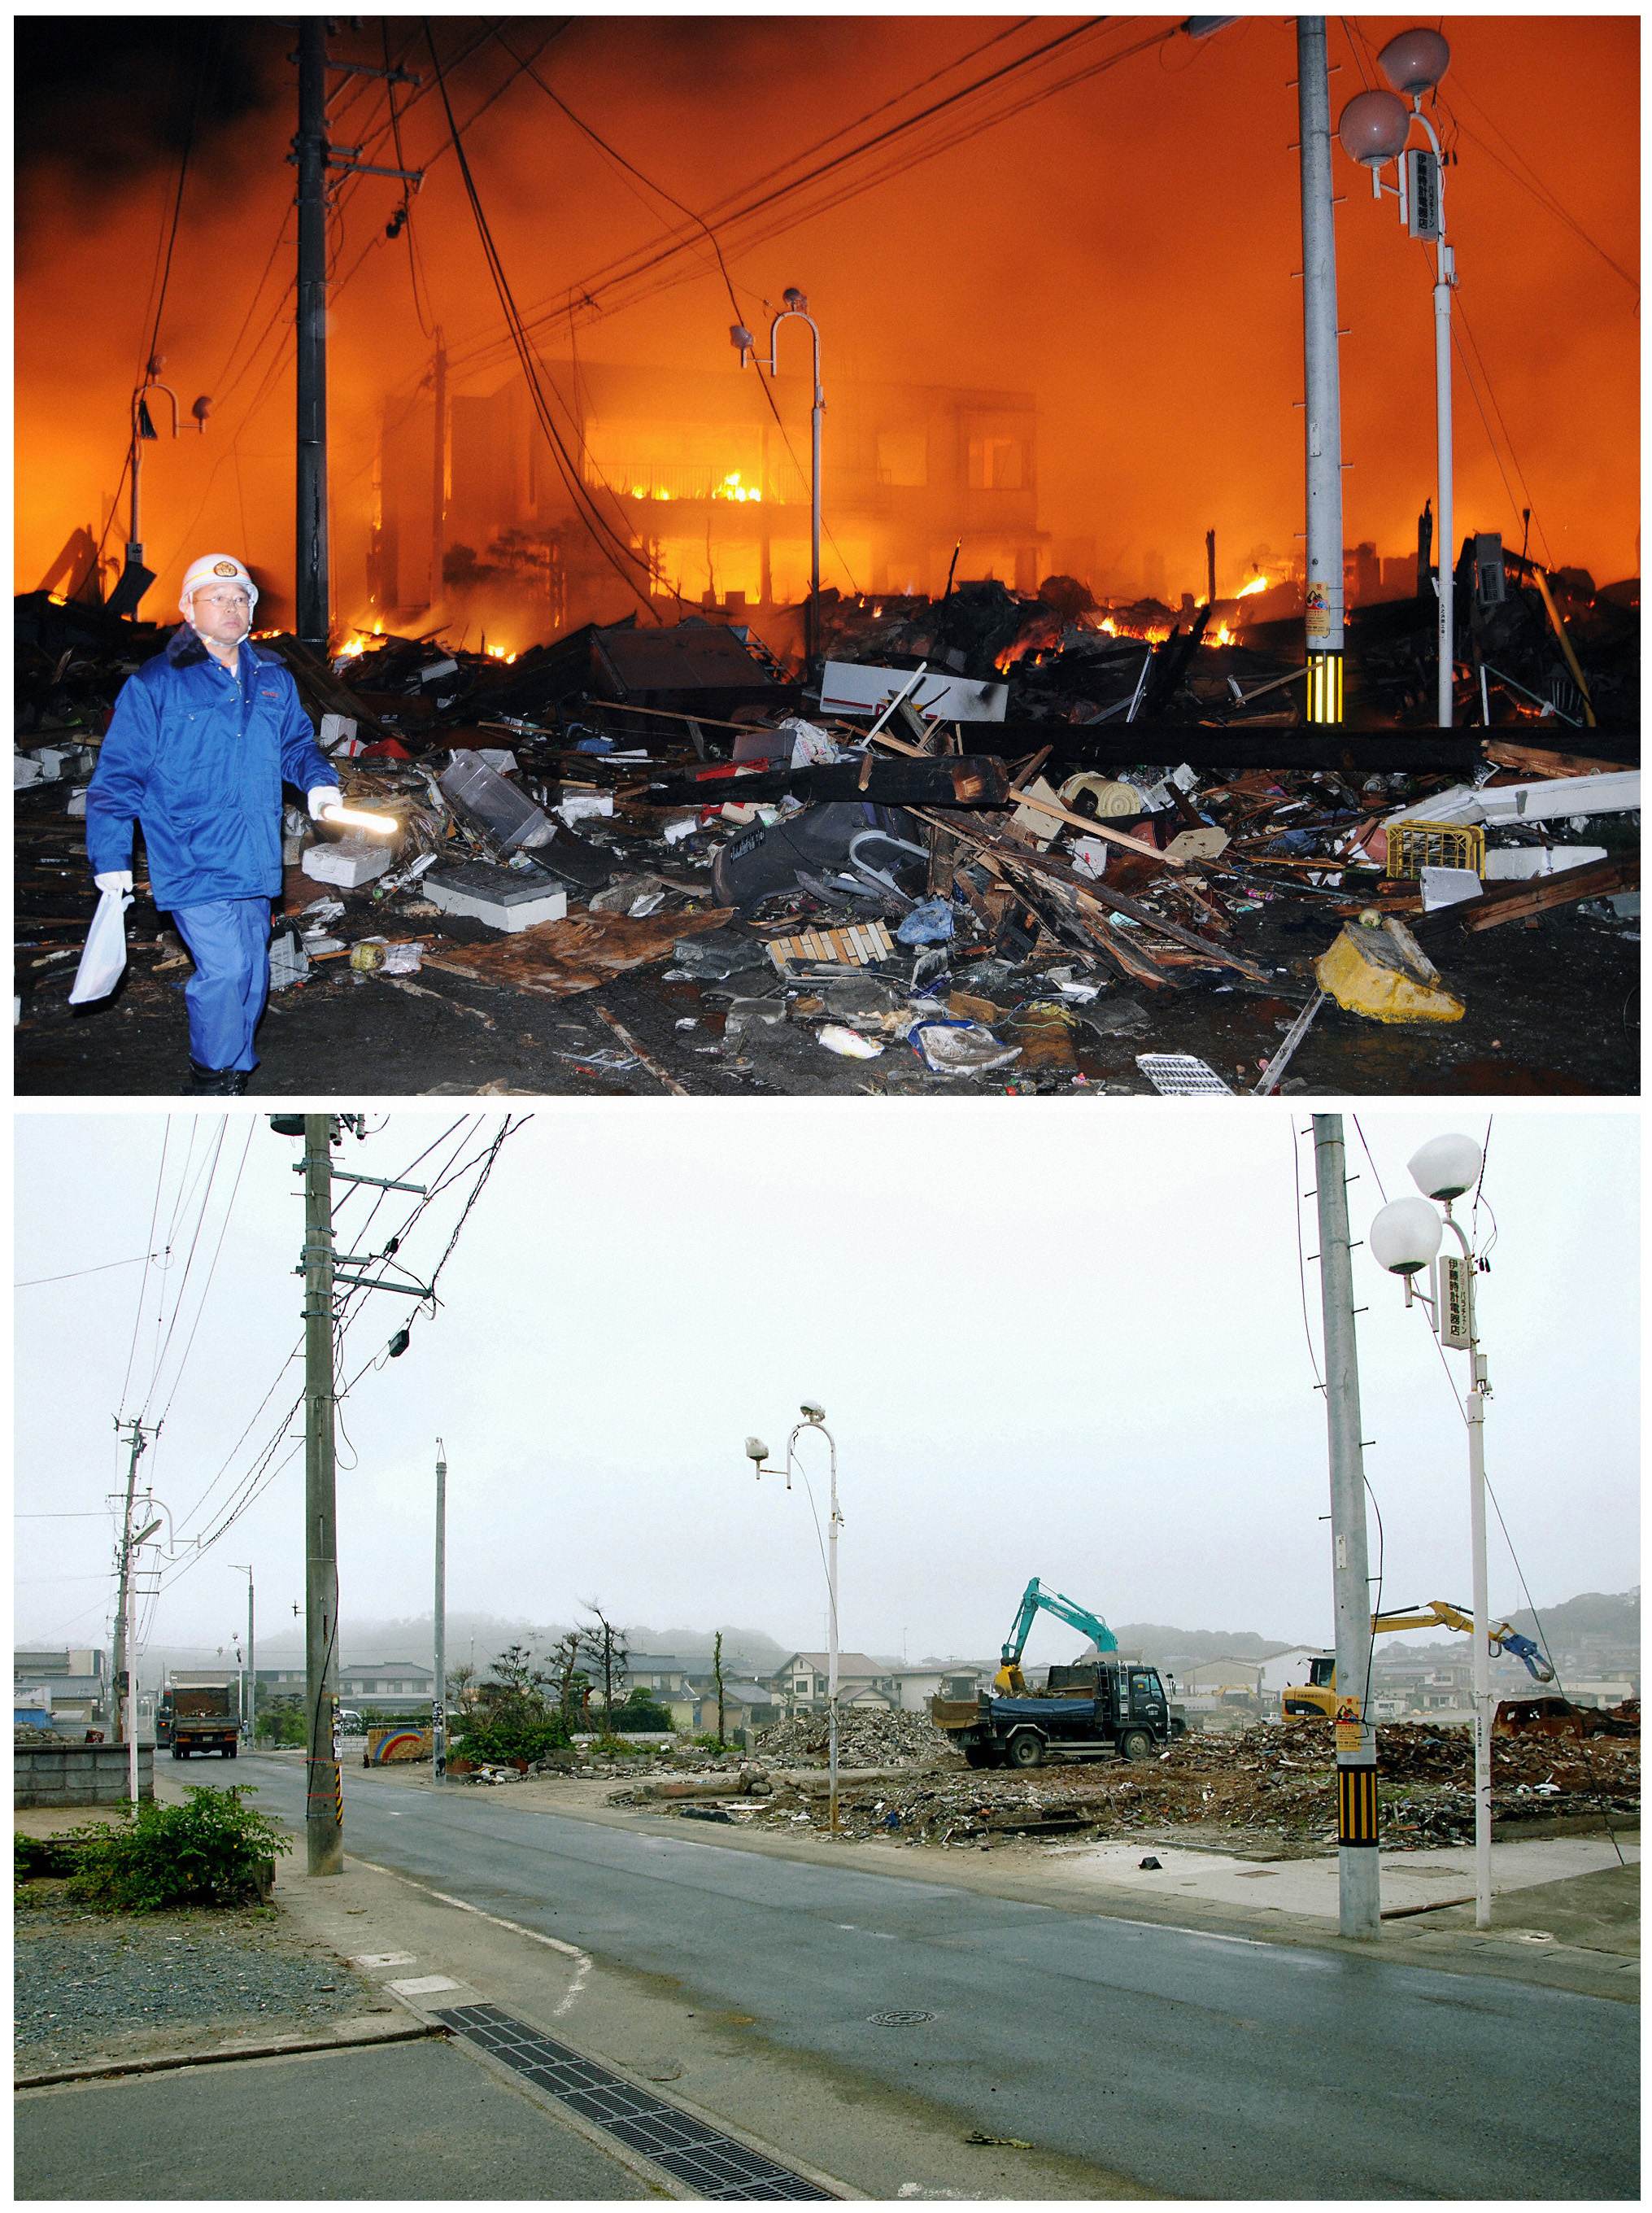 In poza de mai jos sunt comparate doua cadre din orasul Iwaki, Prefectura Fukushima. Prima fotografie cu orasul in flacari a fost facuta pe 11 Martie, chiar in ziua in care s-a produs tsunamiul devastator, iar cea de-a doua poza este facuta pe 1 septembrie.